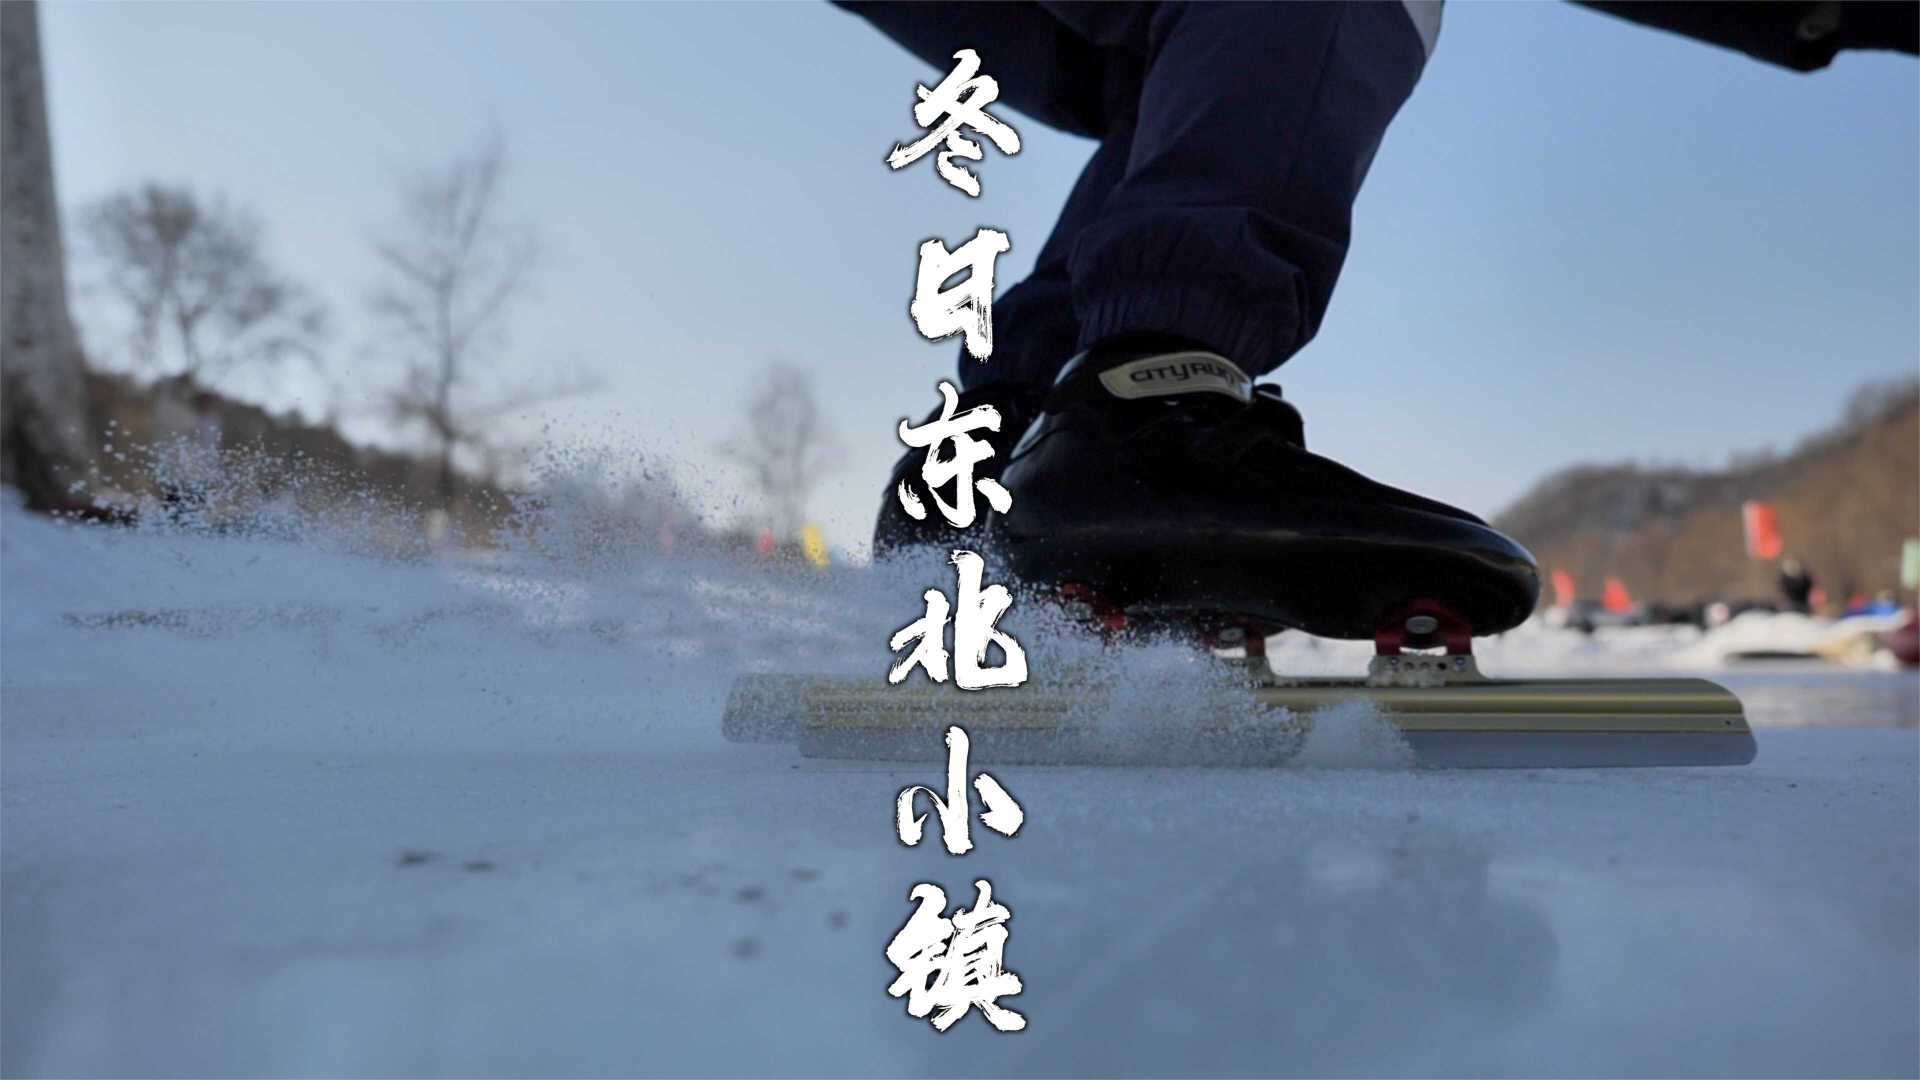 也许看了这个视频你也会想冬天来东北体验滑冰滑雪再看看满天星空